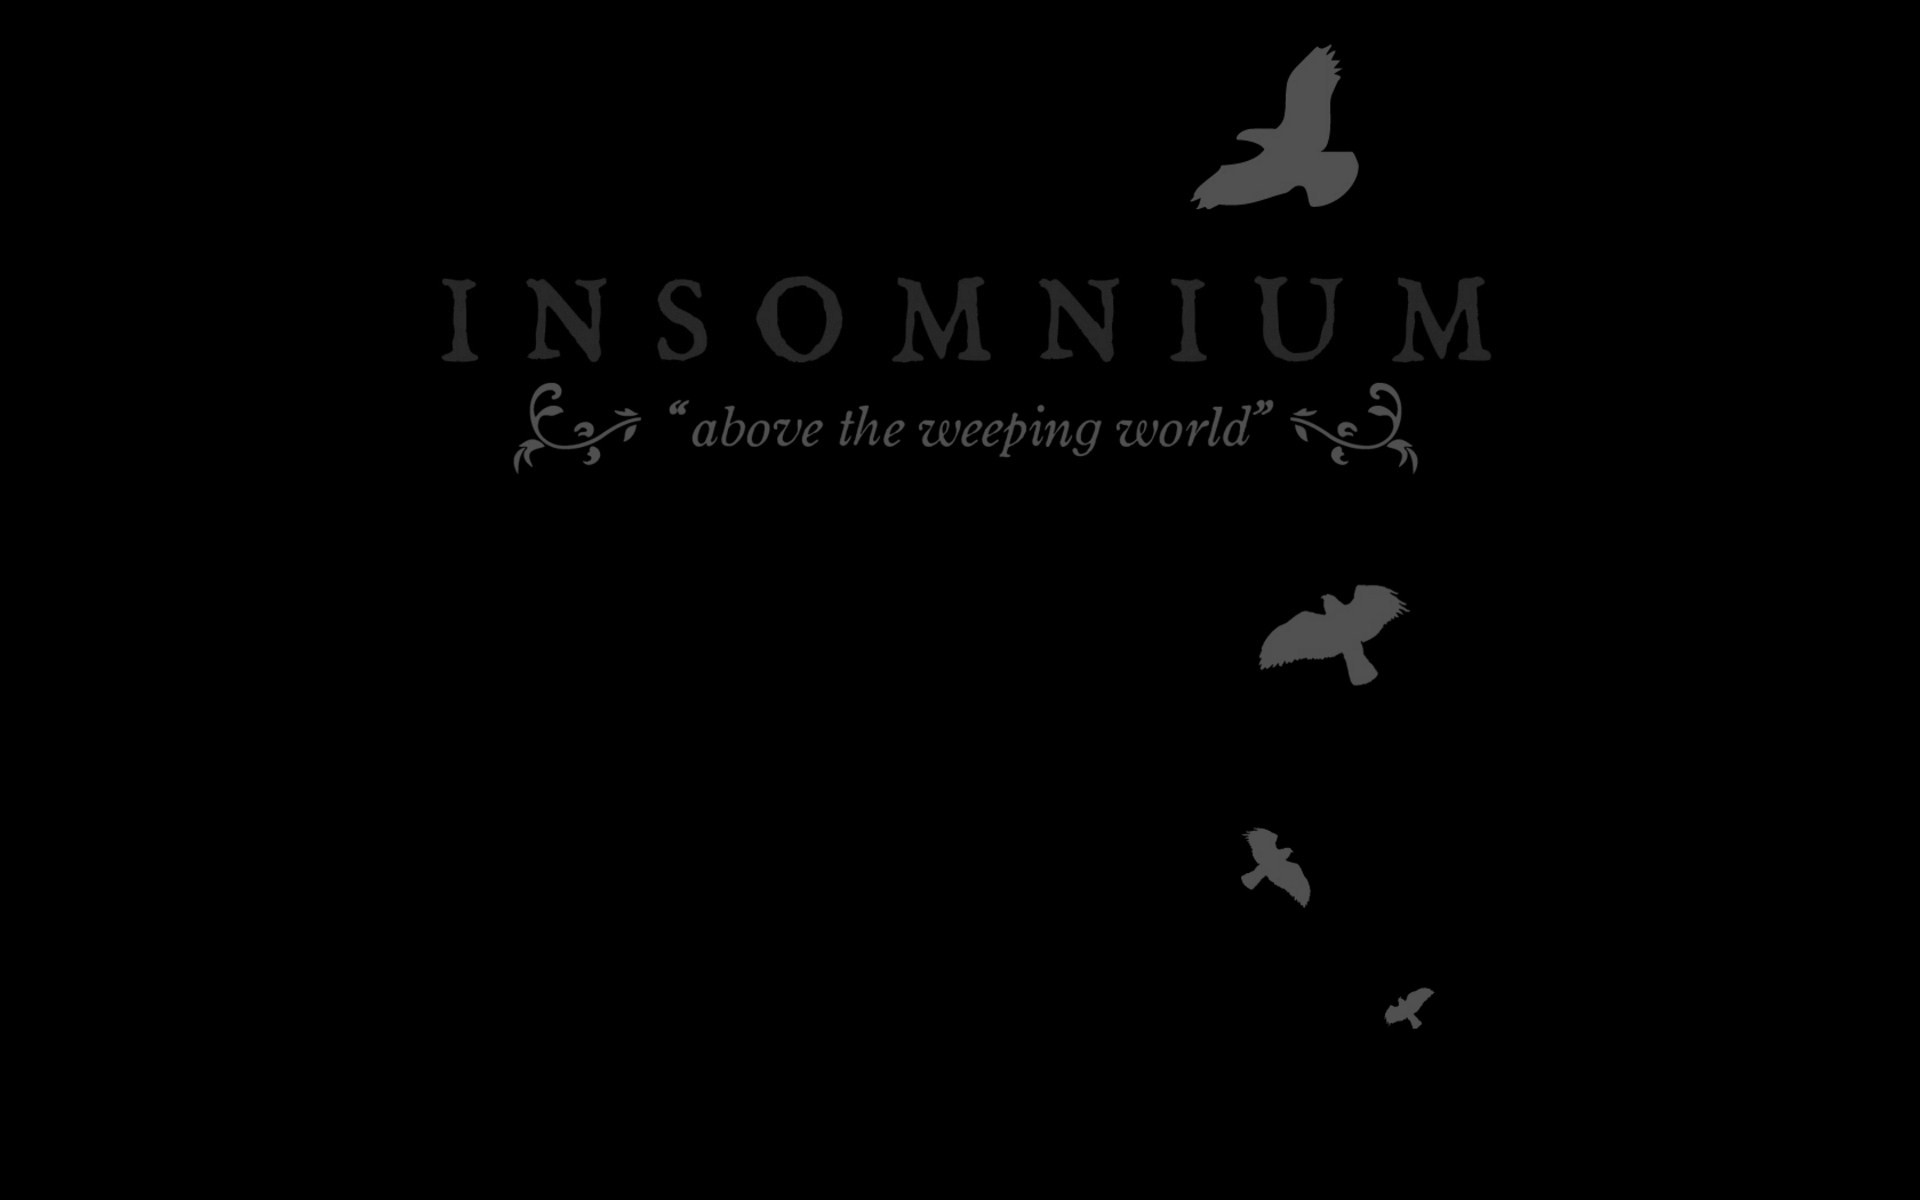 Insomnium - обои на рабочий стол